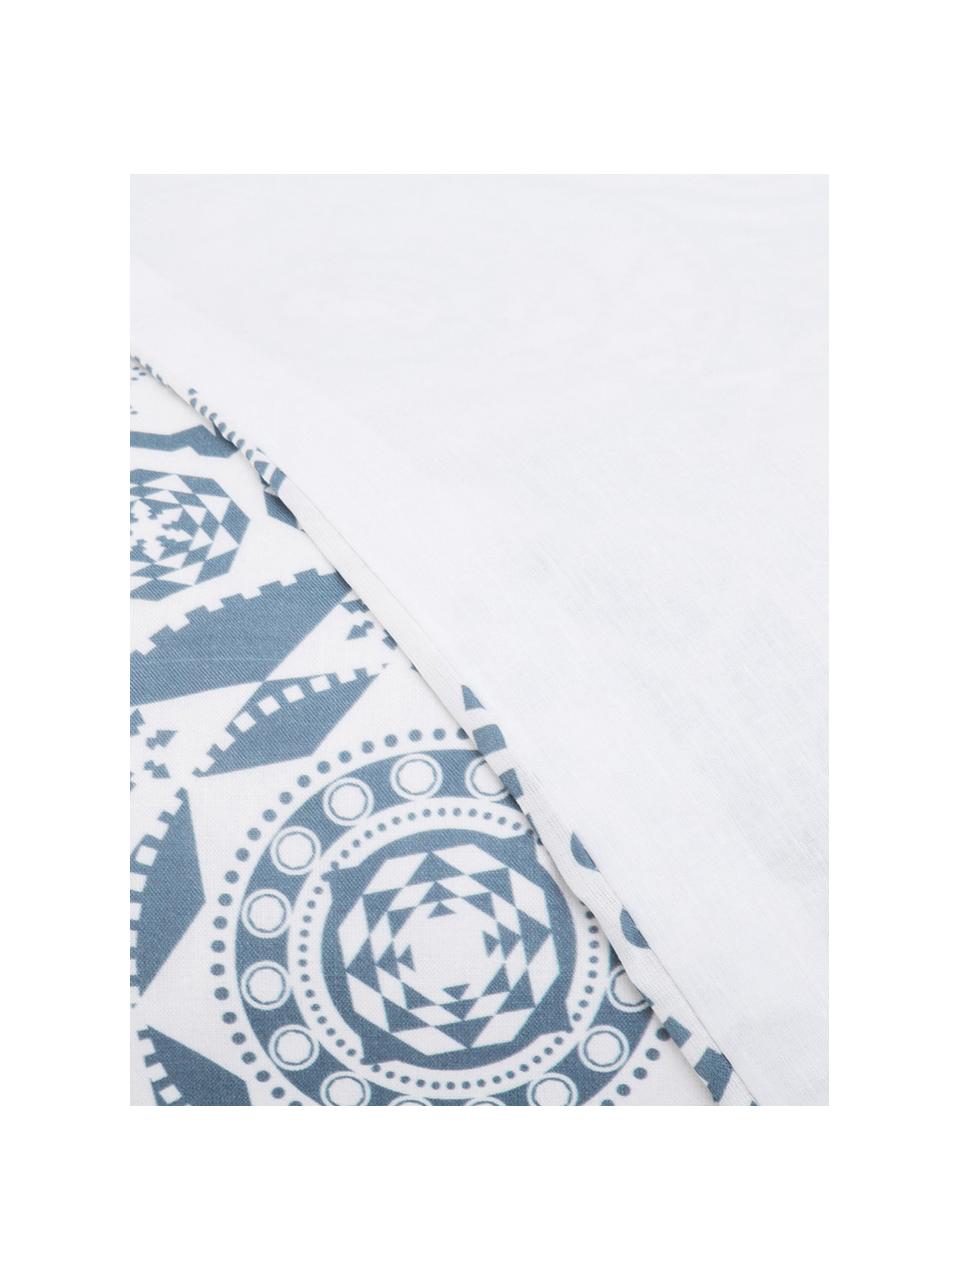 Parure copripiumino in cotone Morris, Cotone, Fronte: blu, bianco Retro: bianco, 200 x 200 cm